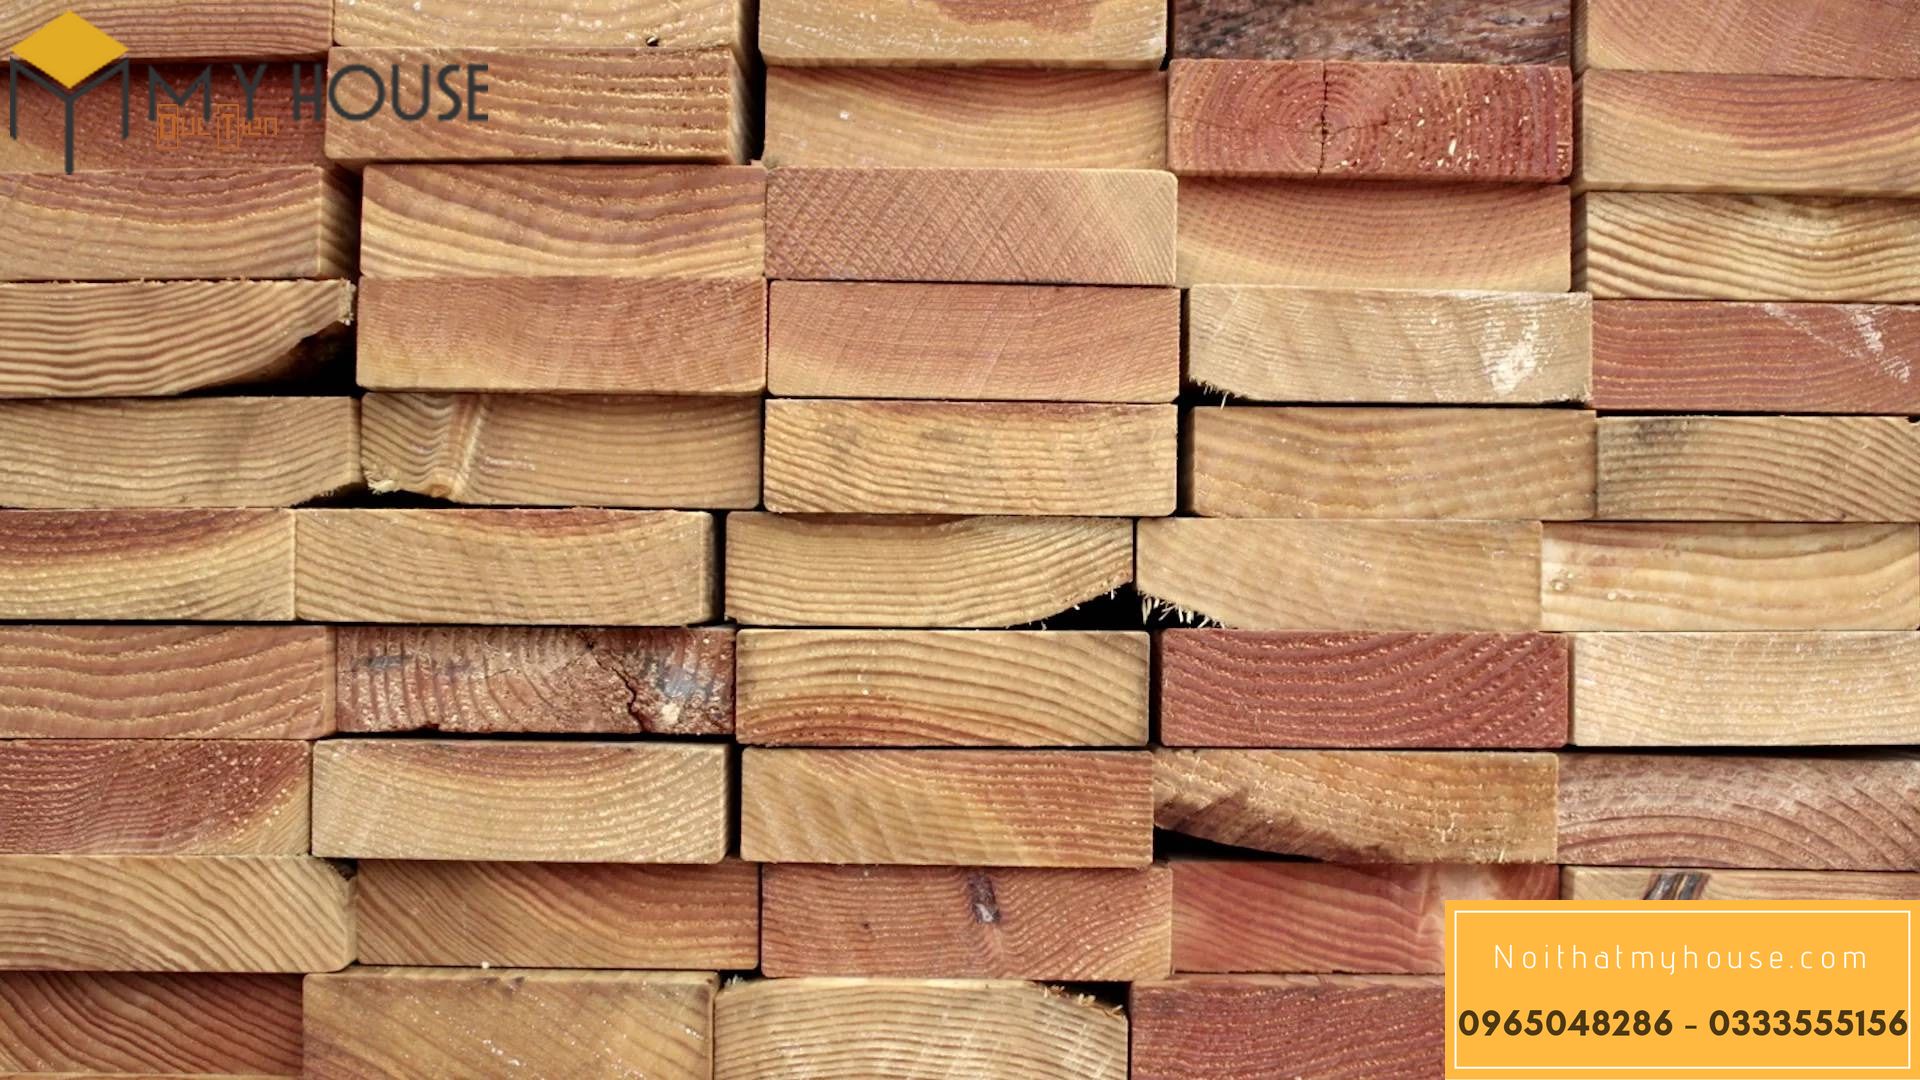 Trọng lượng riêng của gỗ - 1m3 gỗ bằng bao nhiêu kg?